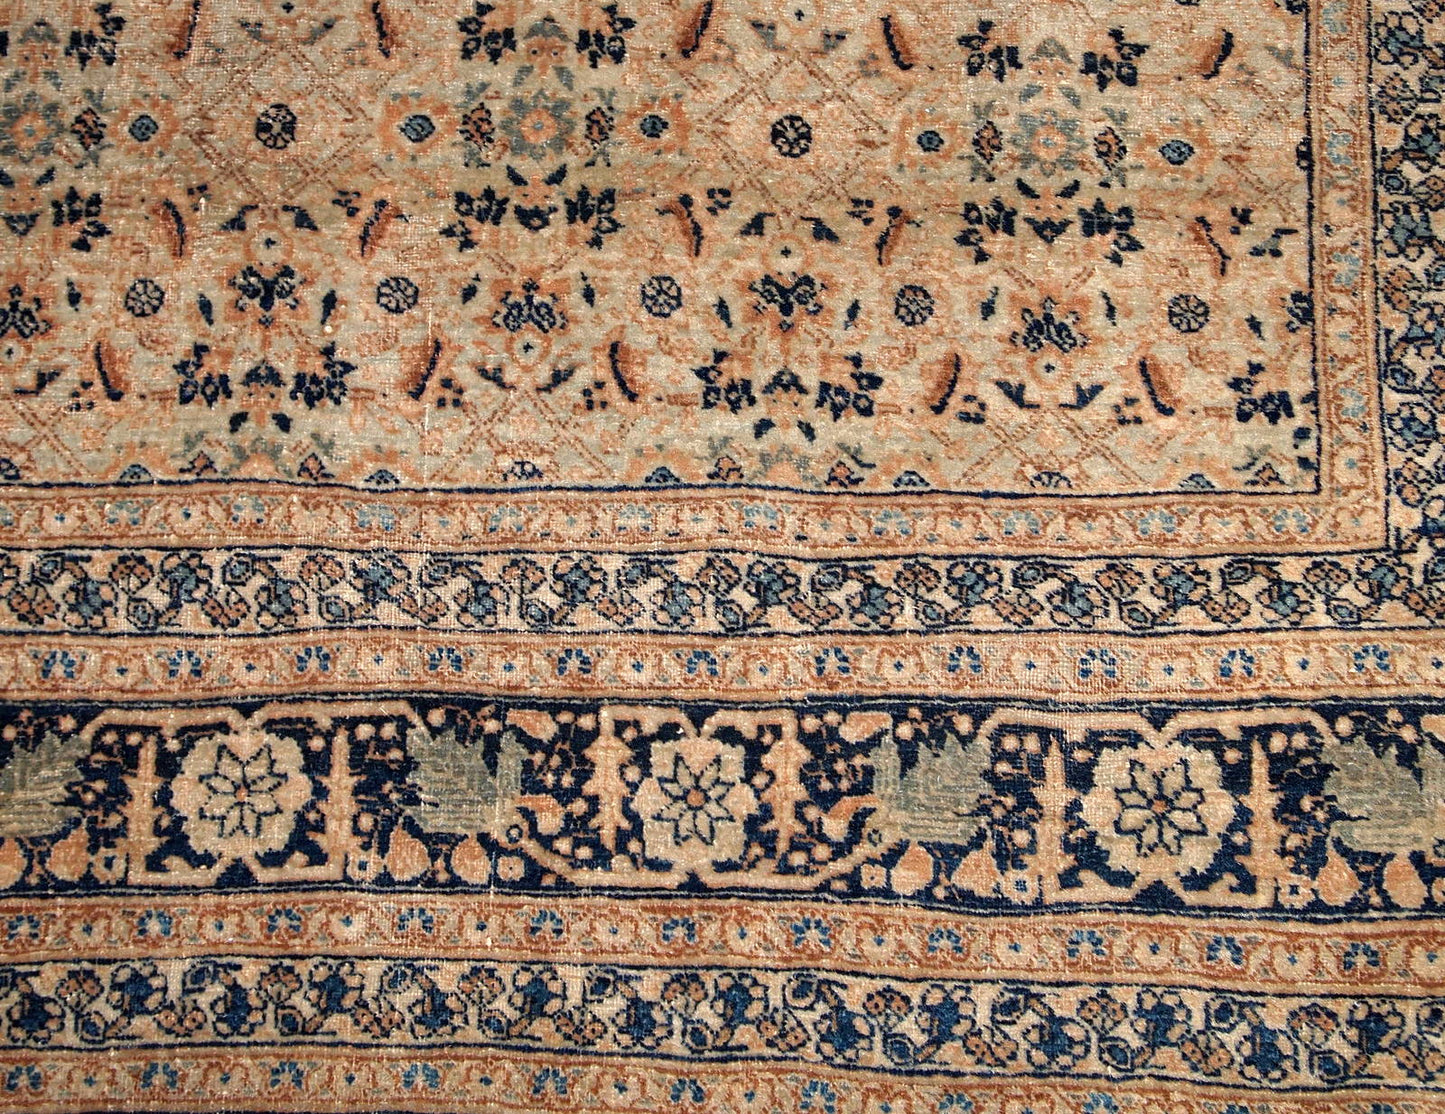 Handmade antique Persian Tabriz Hajalili rug 1880s